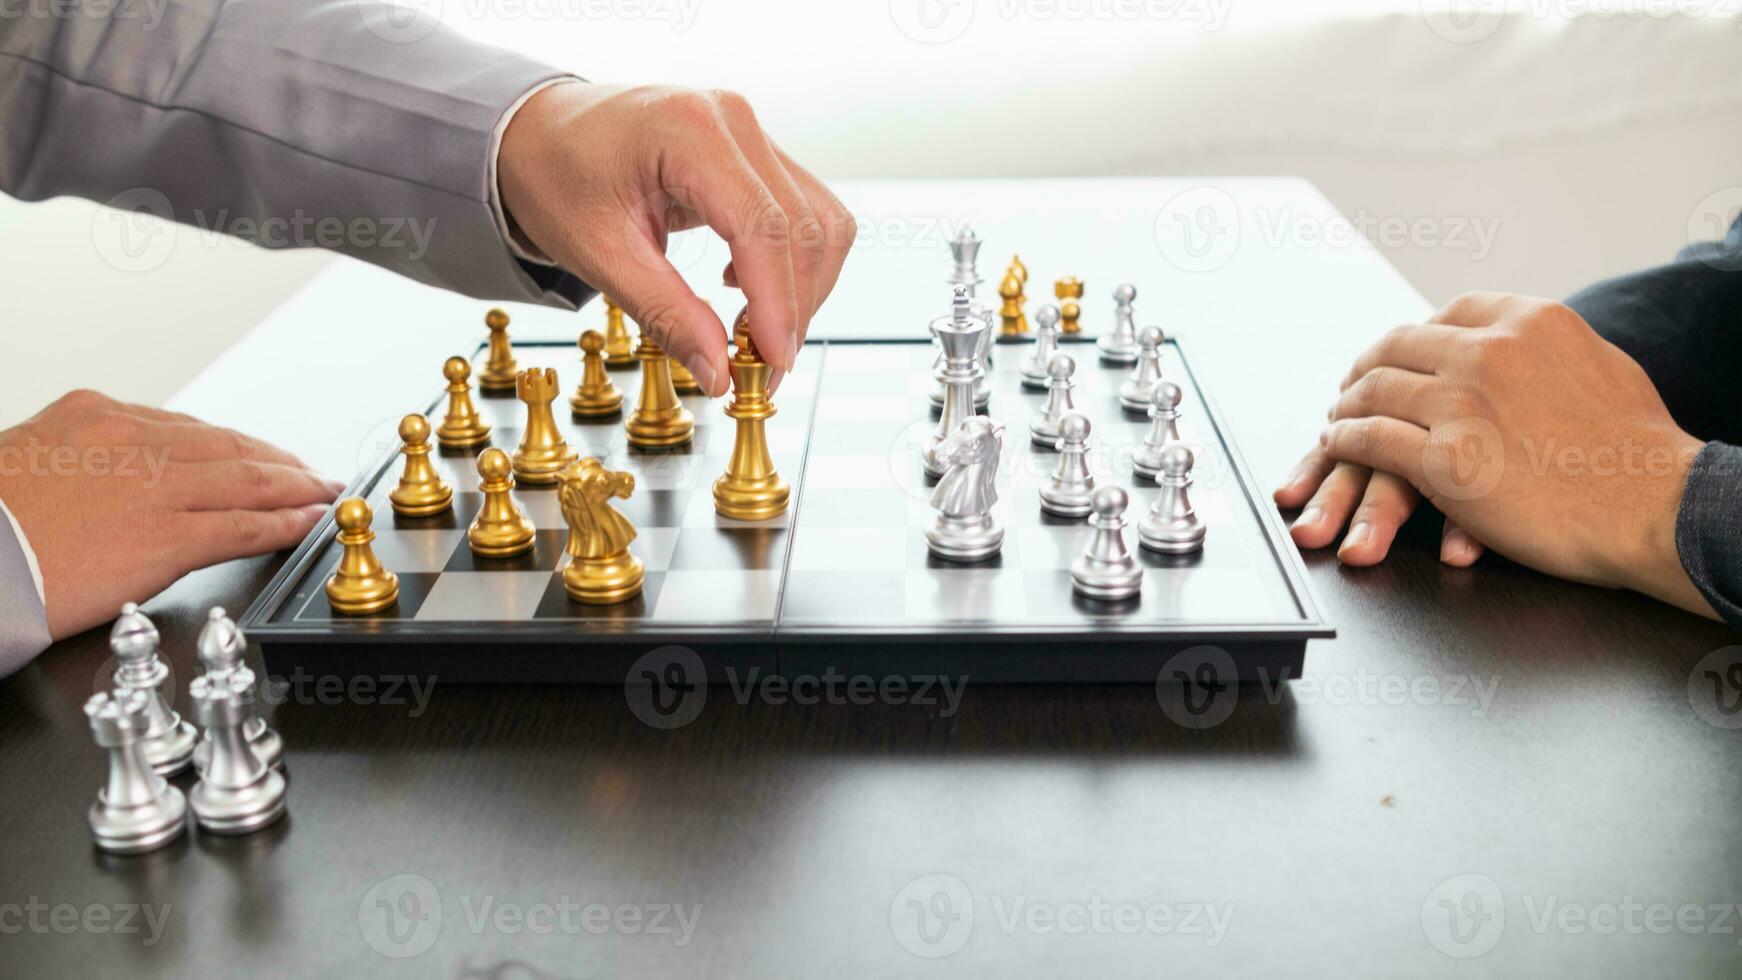 jong zakenman planning winnend schaak Actie in spel van schaak vertegenwoordigen geslaagd en zegevierend bedrijf pad. schaak concept vertegenwoordigen strategisch bedrijf strategie naar bereiken zege. foto